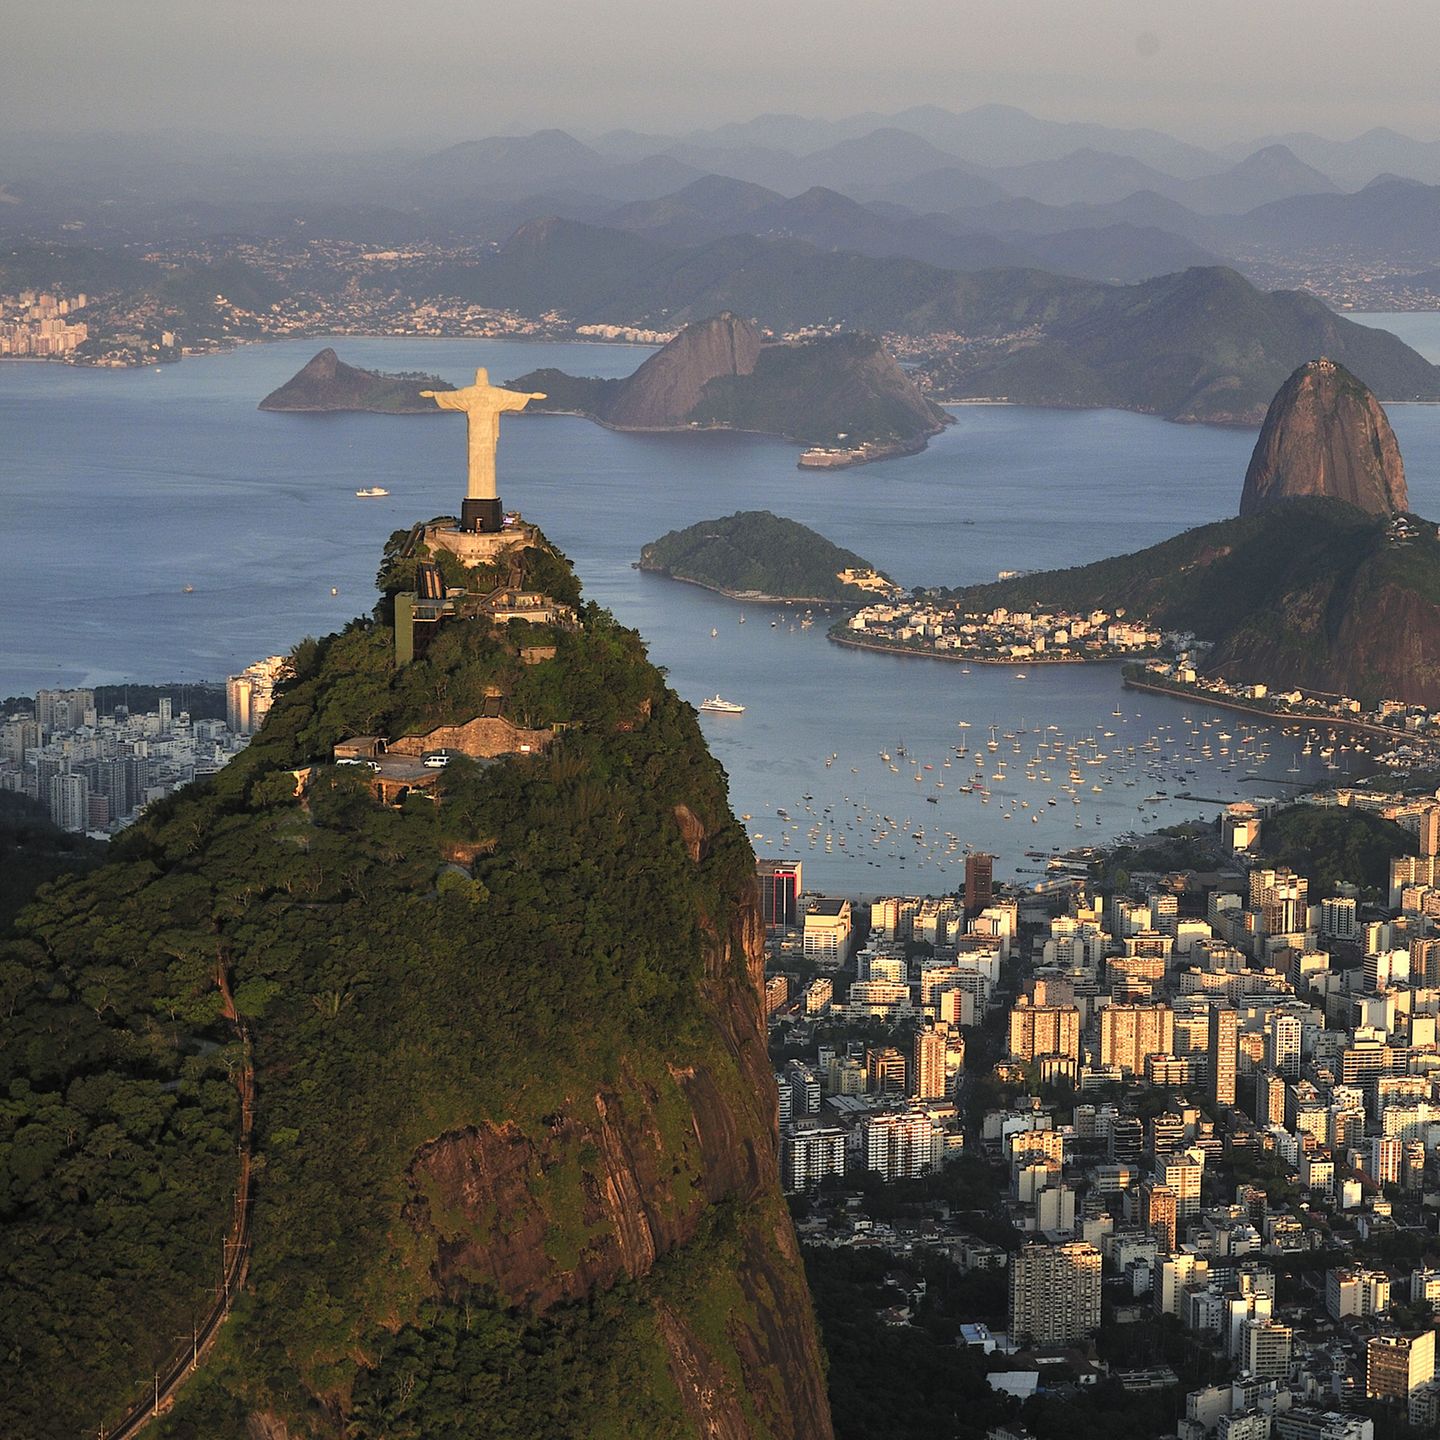 Rio de Janeiro: Corcovado